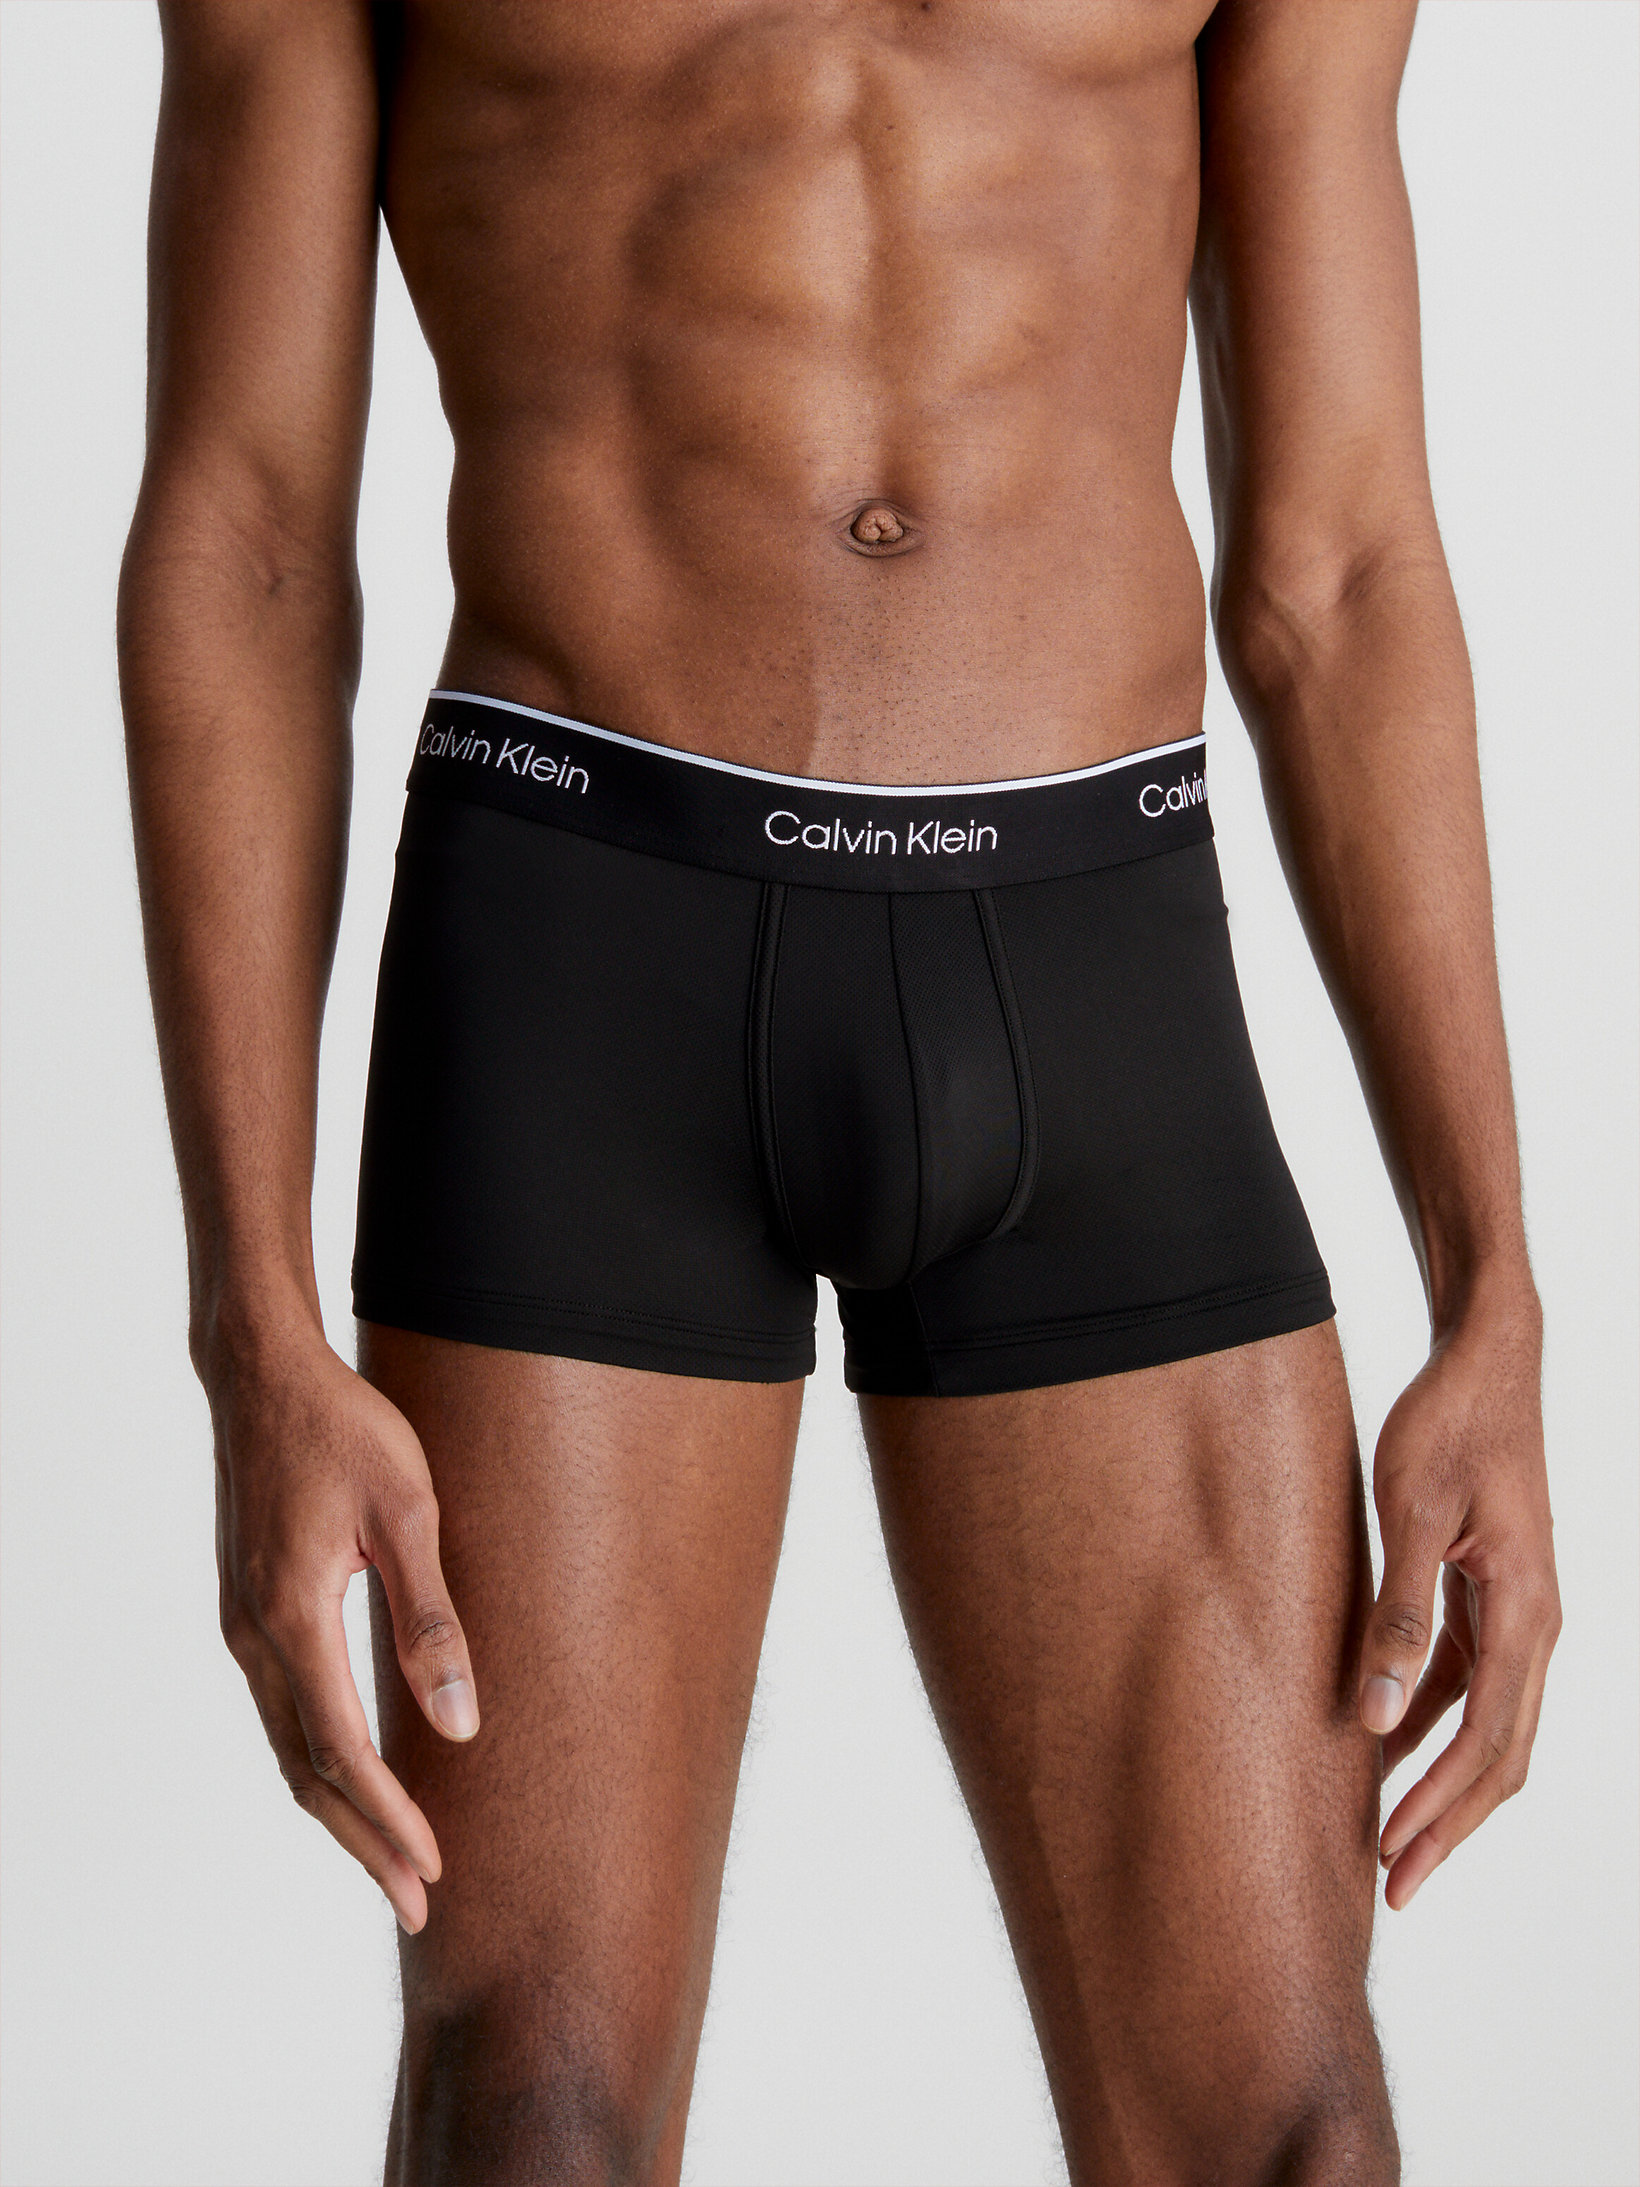 CK Pro Air Calvin Klein Uomo Abbigliamento Intimo Boxer shorts Boxer shorts aderenti Boxer aderenti a vita bassa in confezione da 2 